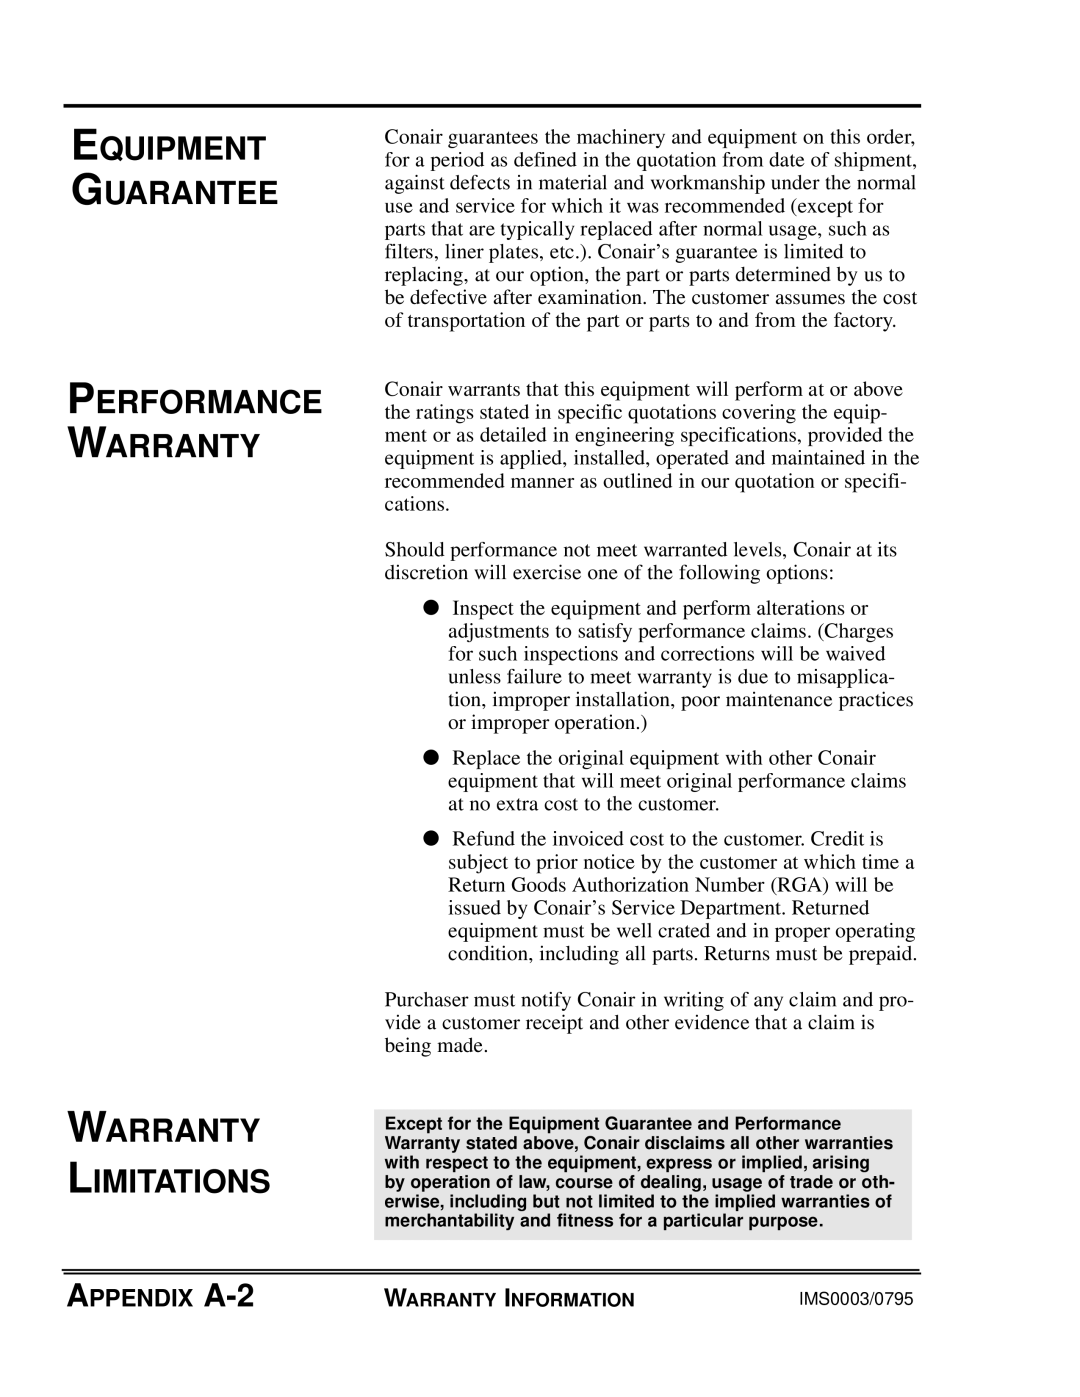 Conair GB/ WSB manual Equipment Guarantee Performance Warranty, Warranty Limitations, APPENDIX A-2 